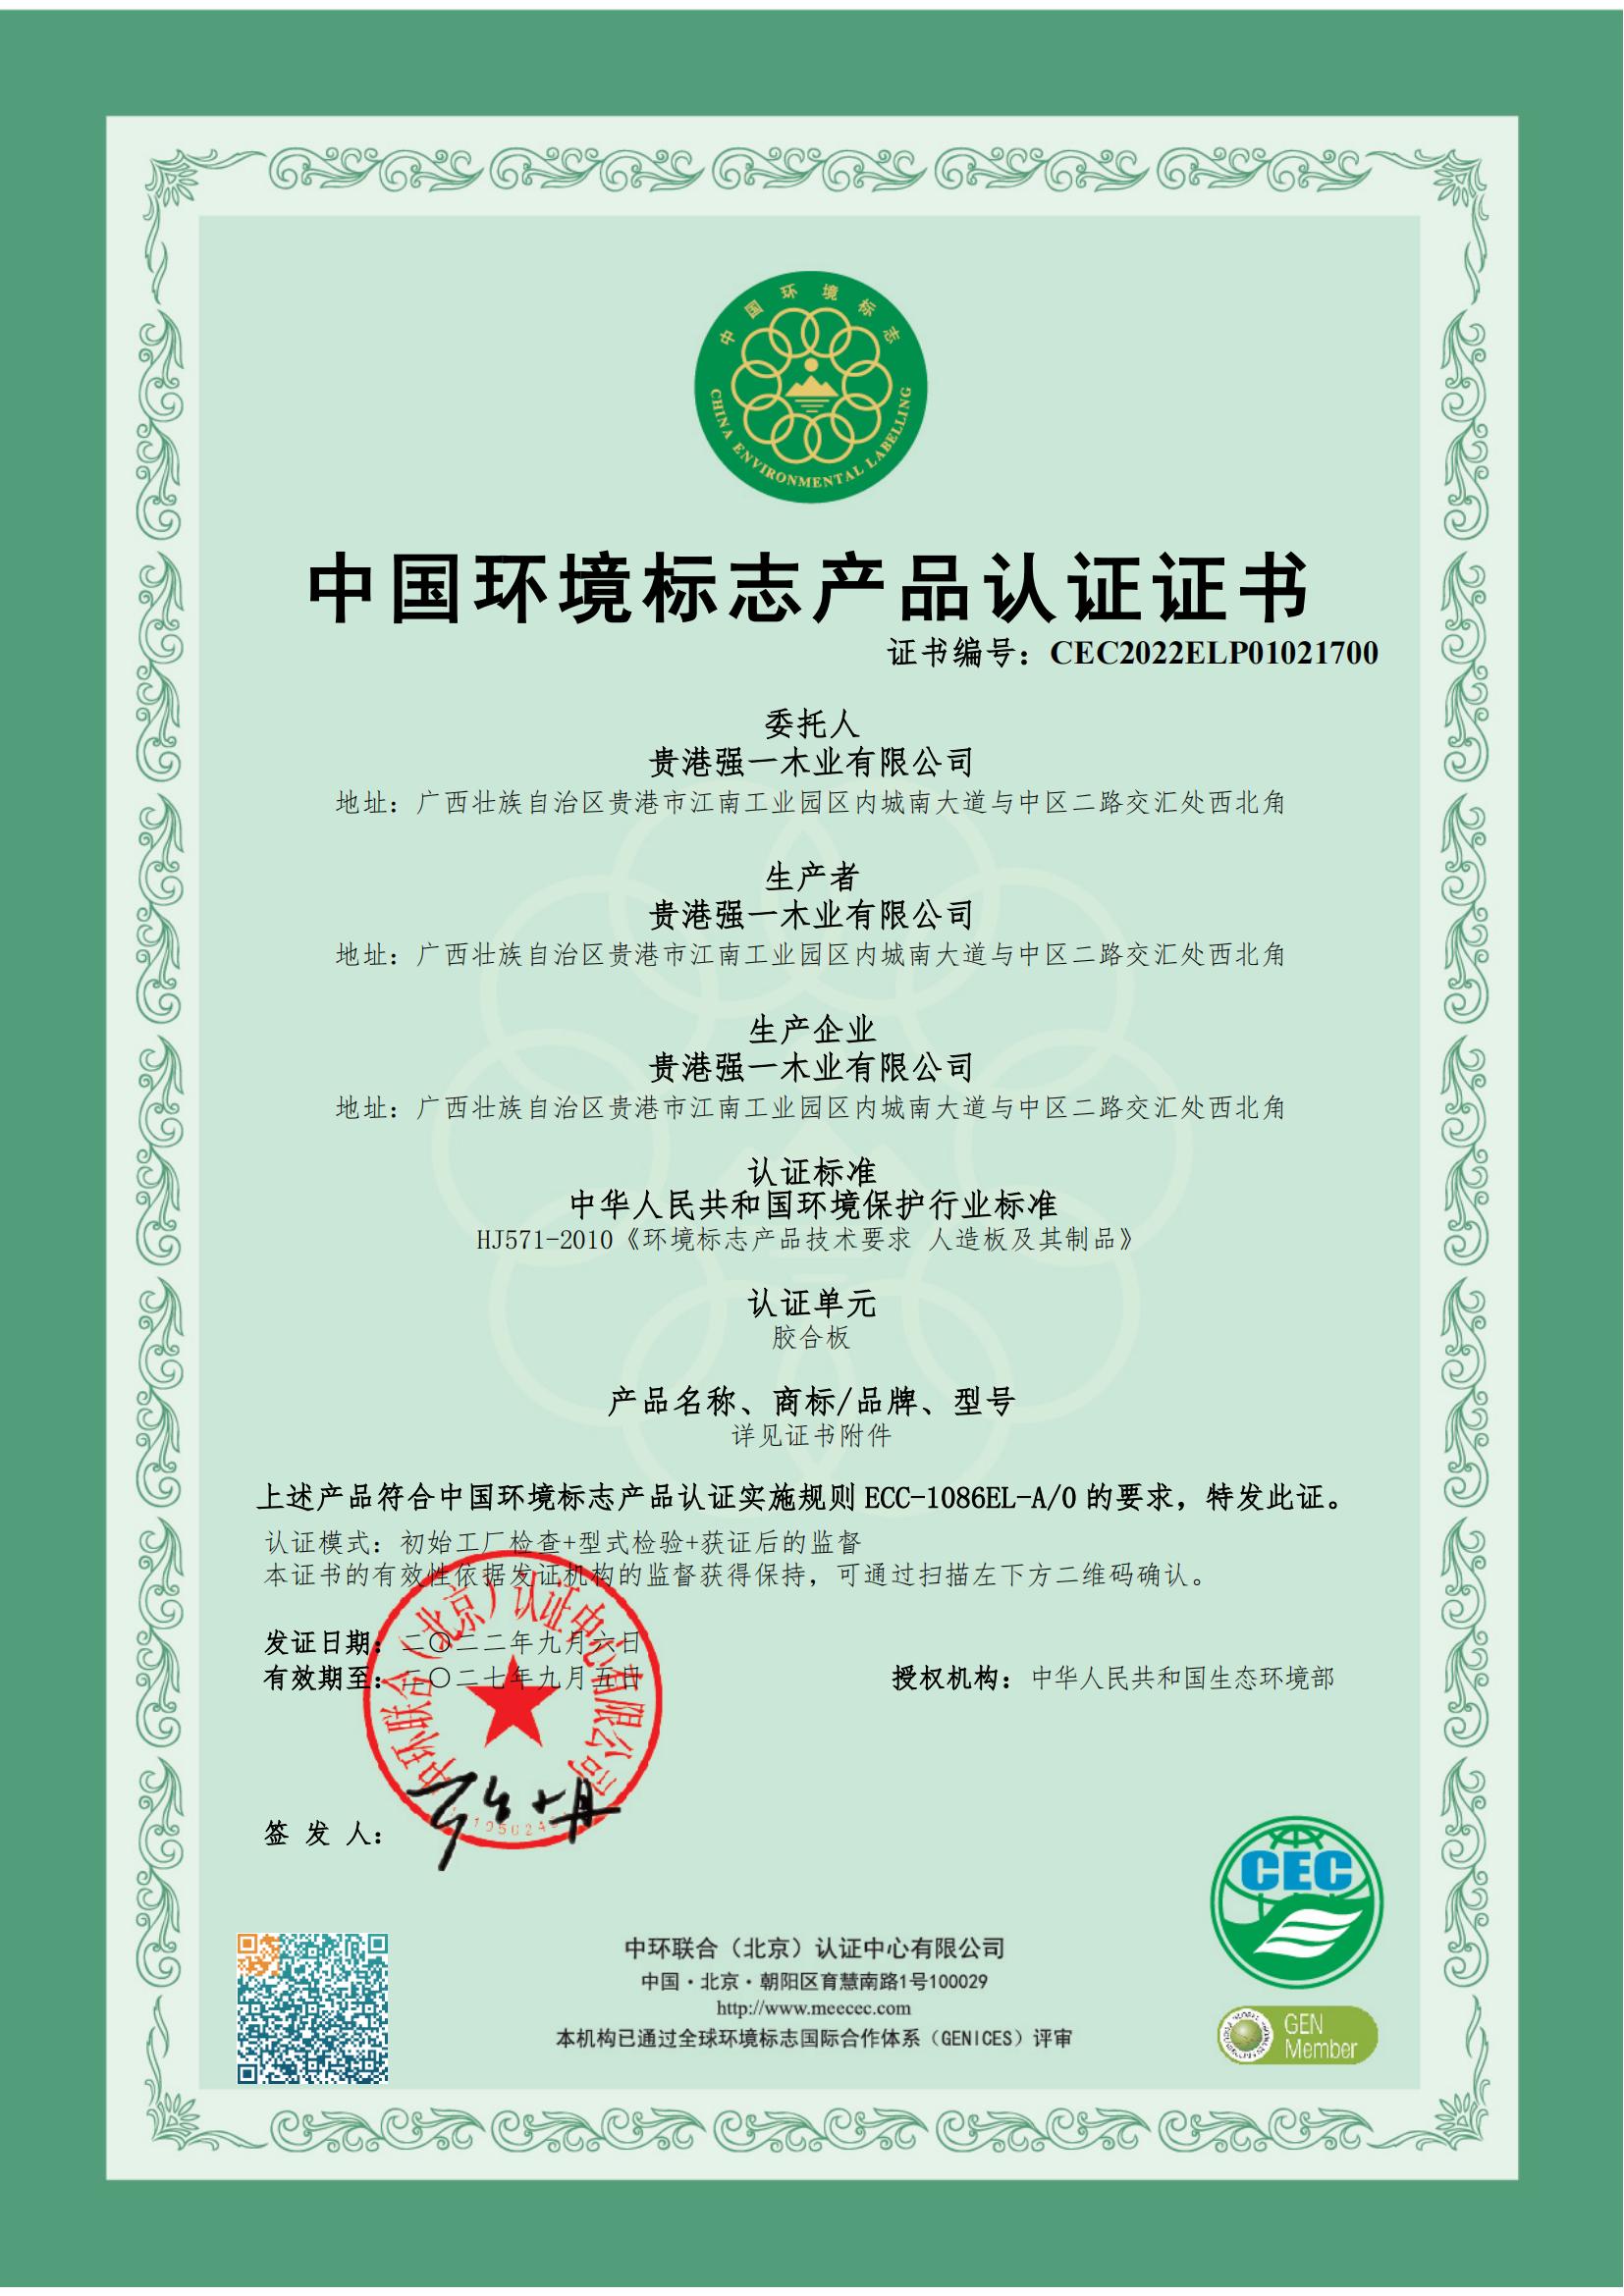 十環認證——中國環境標志產品認證